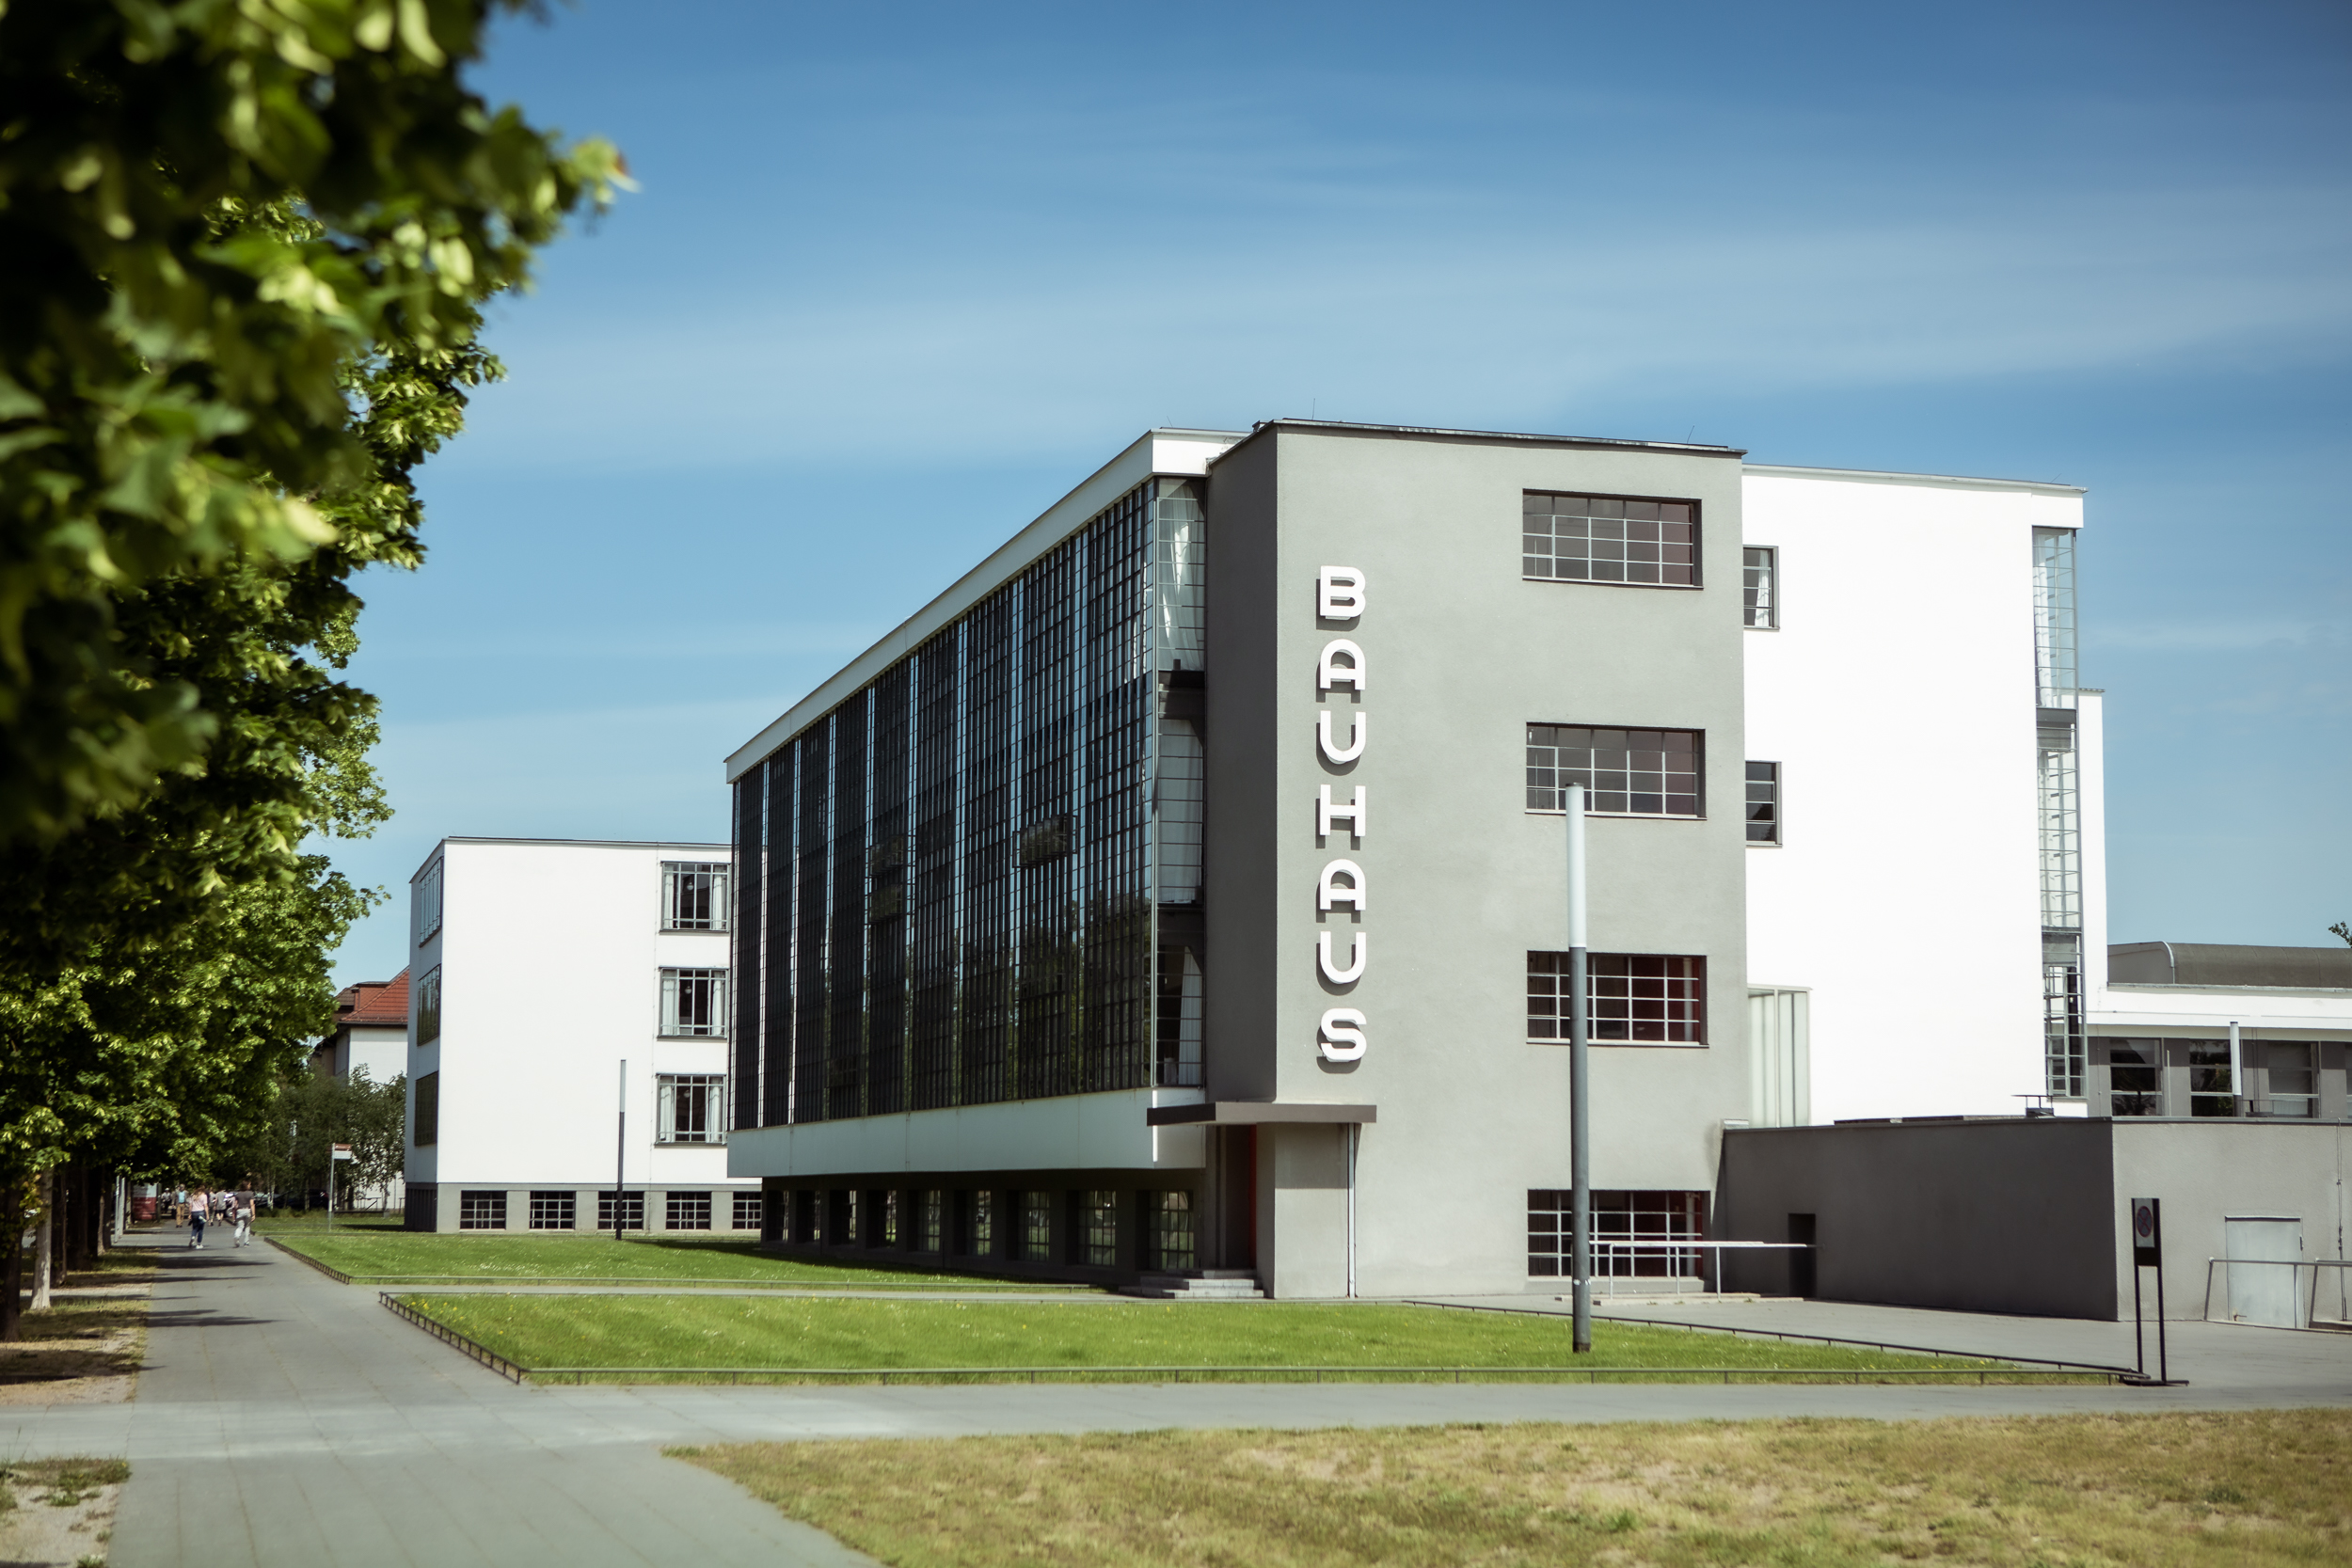 Das Bauhausgebäude in Dessau mit dem berühmten Schriftzug